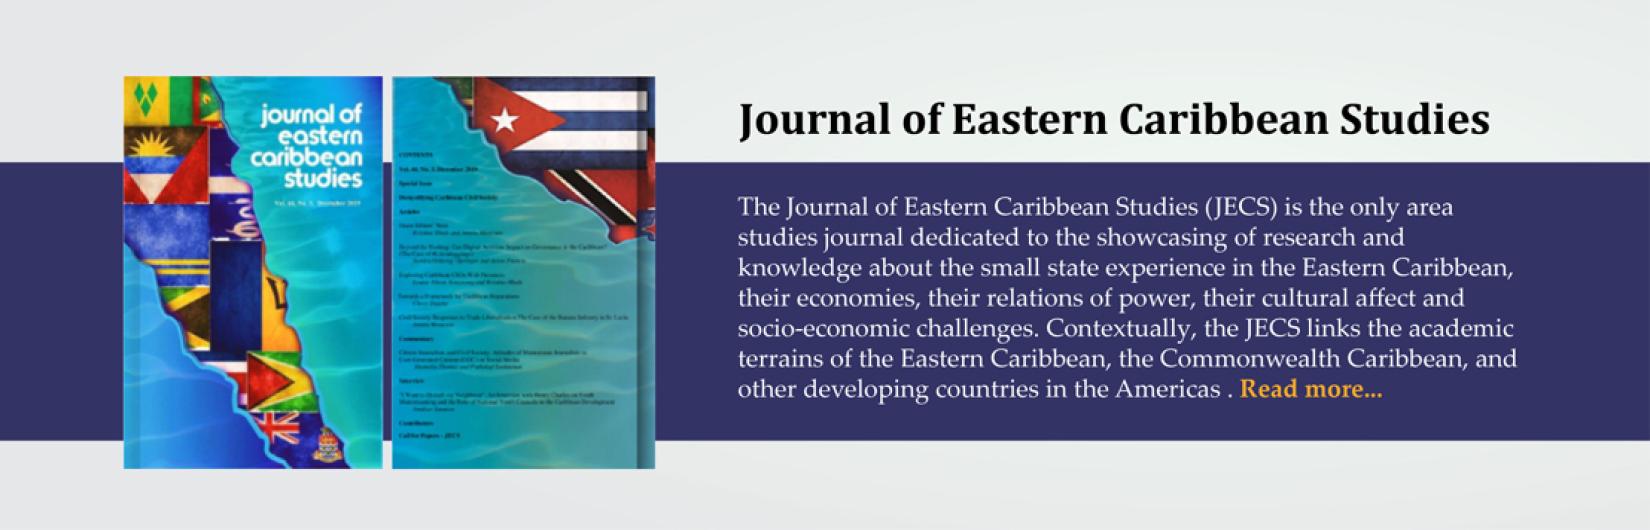 Journal of Eastern Caribbean Studies